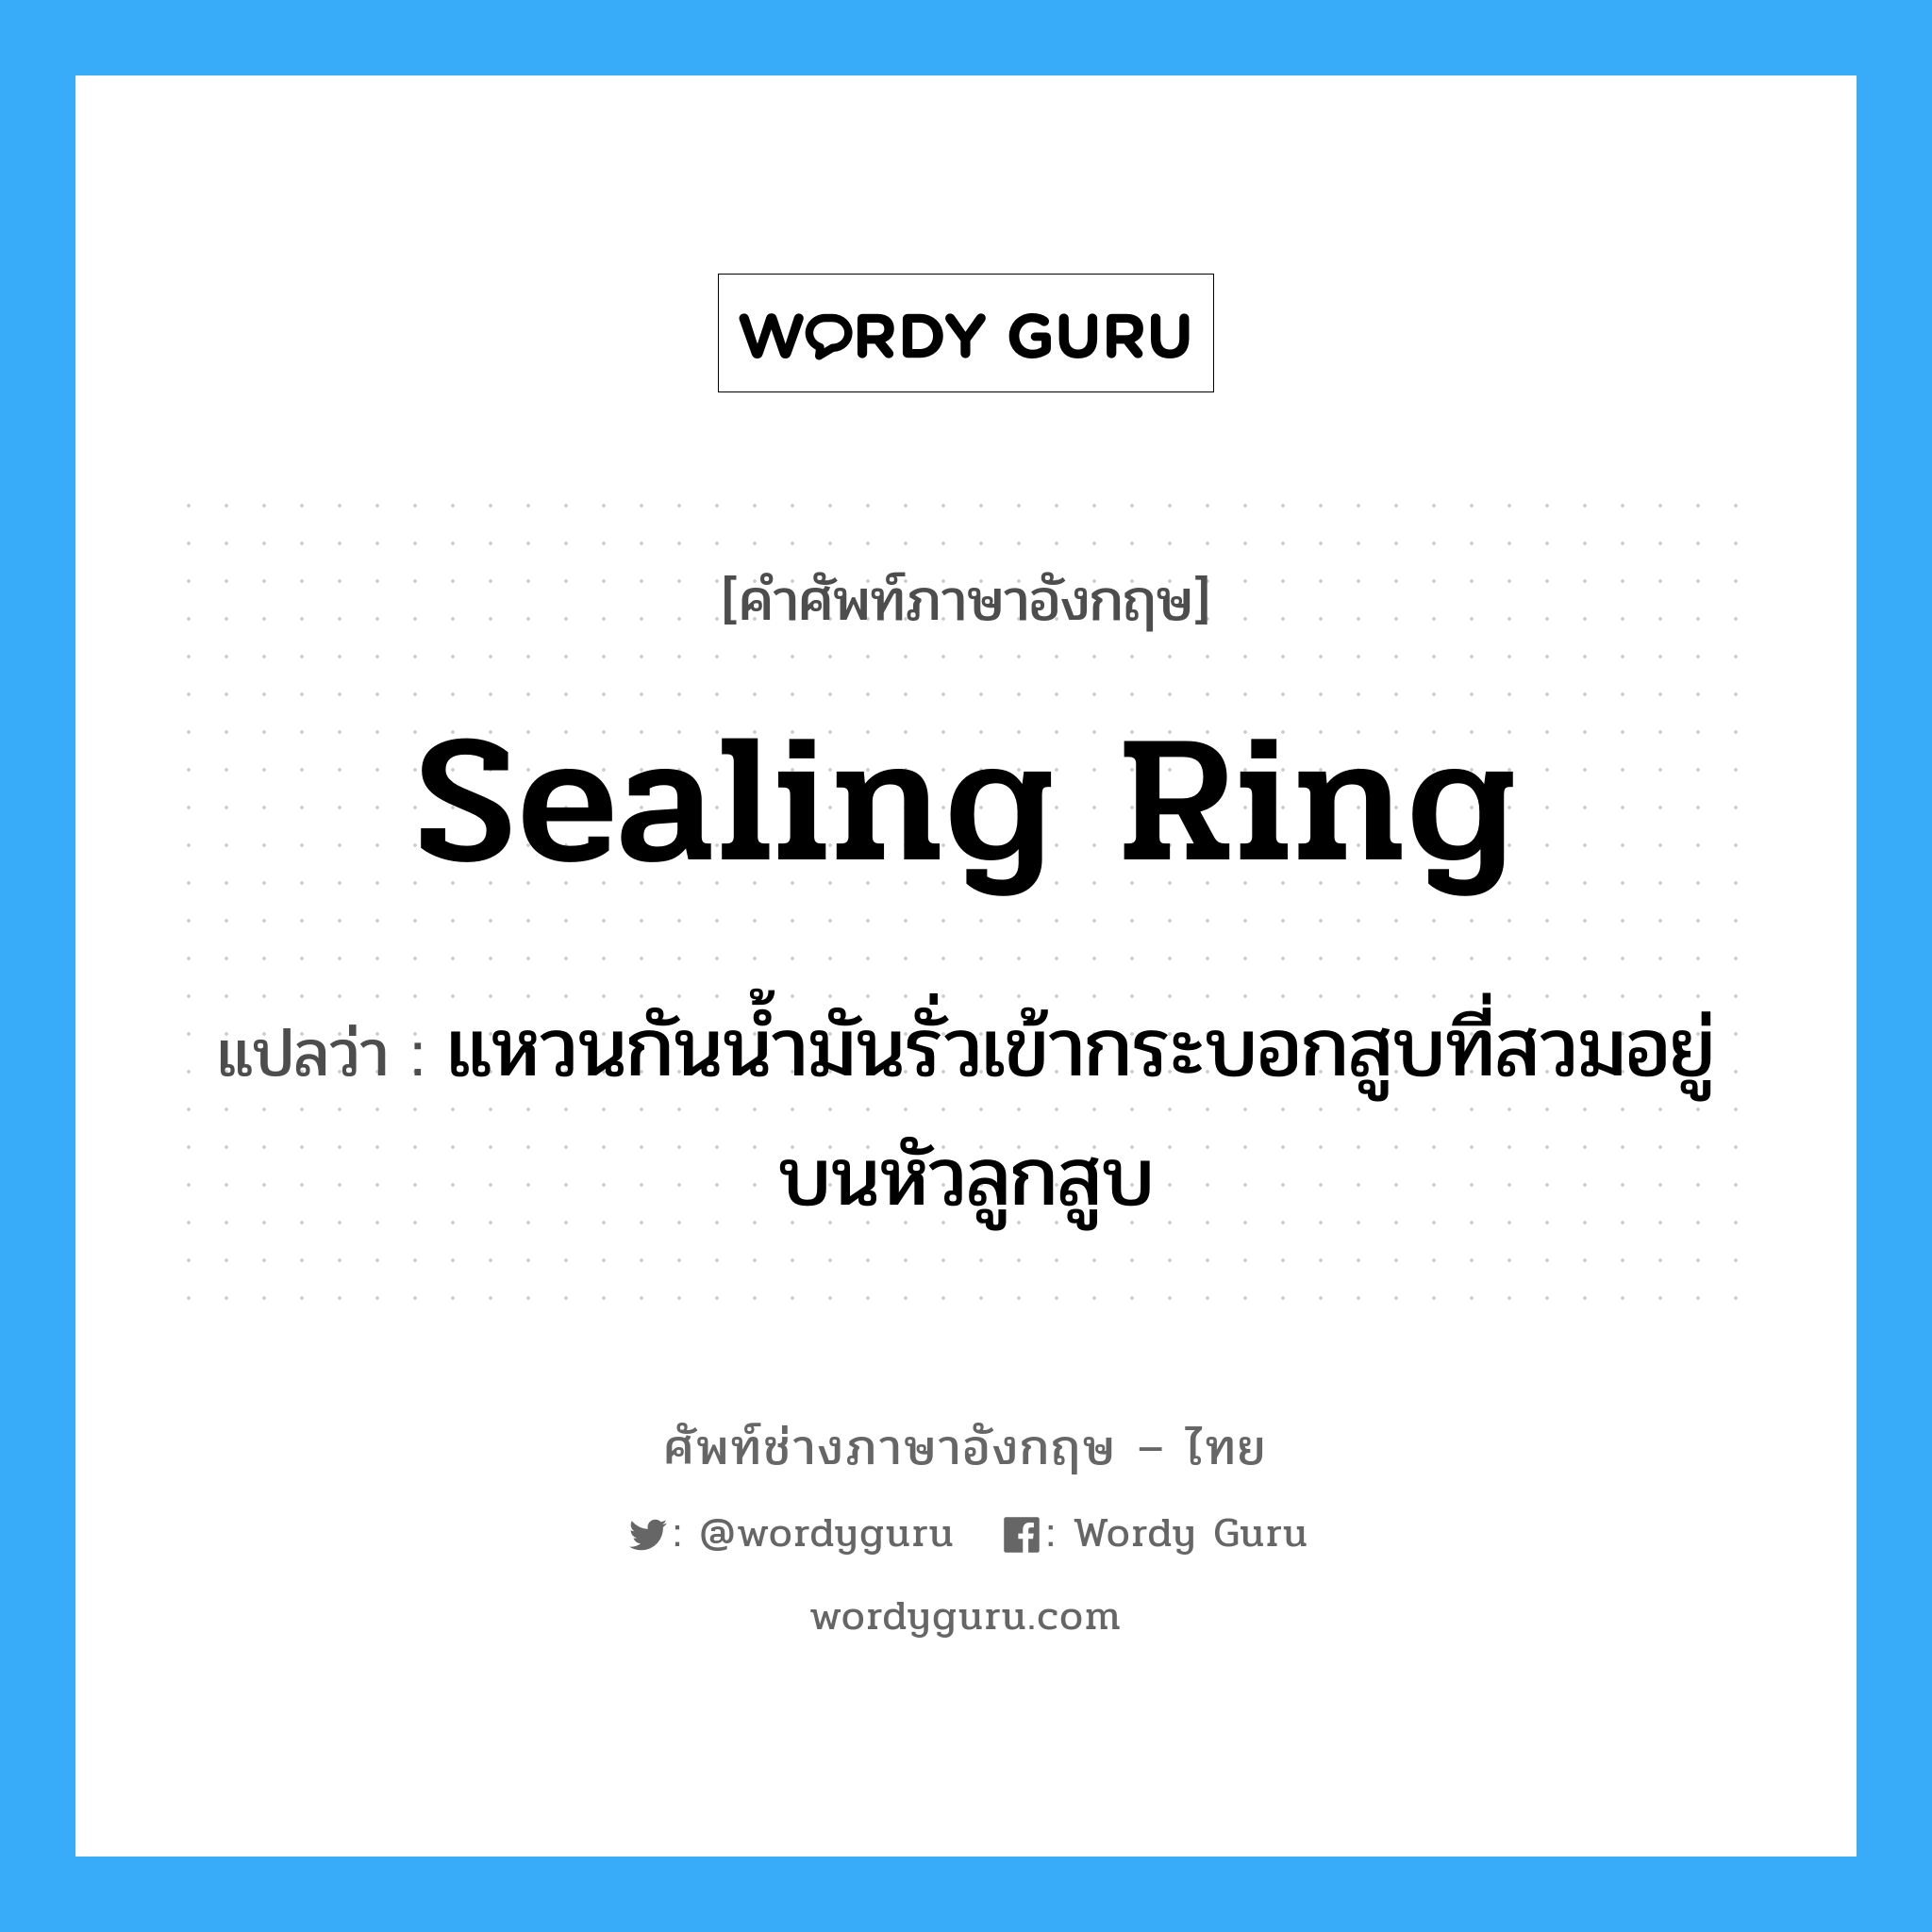 sealing ring แปลว่า?, คำศัพท์ช่างภาษาอังกฤษ - ไทย sealing ring คำศัพท์ภาษาอังกฤษ sealing ring แปลว่า แหวนกันน้ำมันรั่วเข้ากระบอกสูบที่สวมอยู่บนหัวลูกสูบ